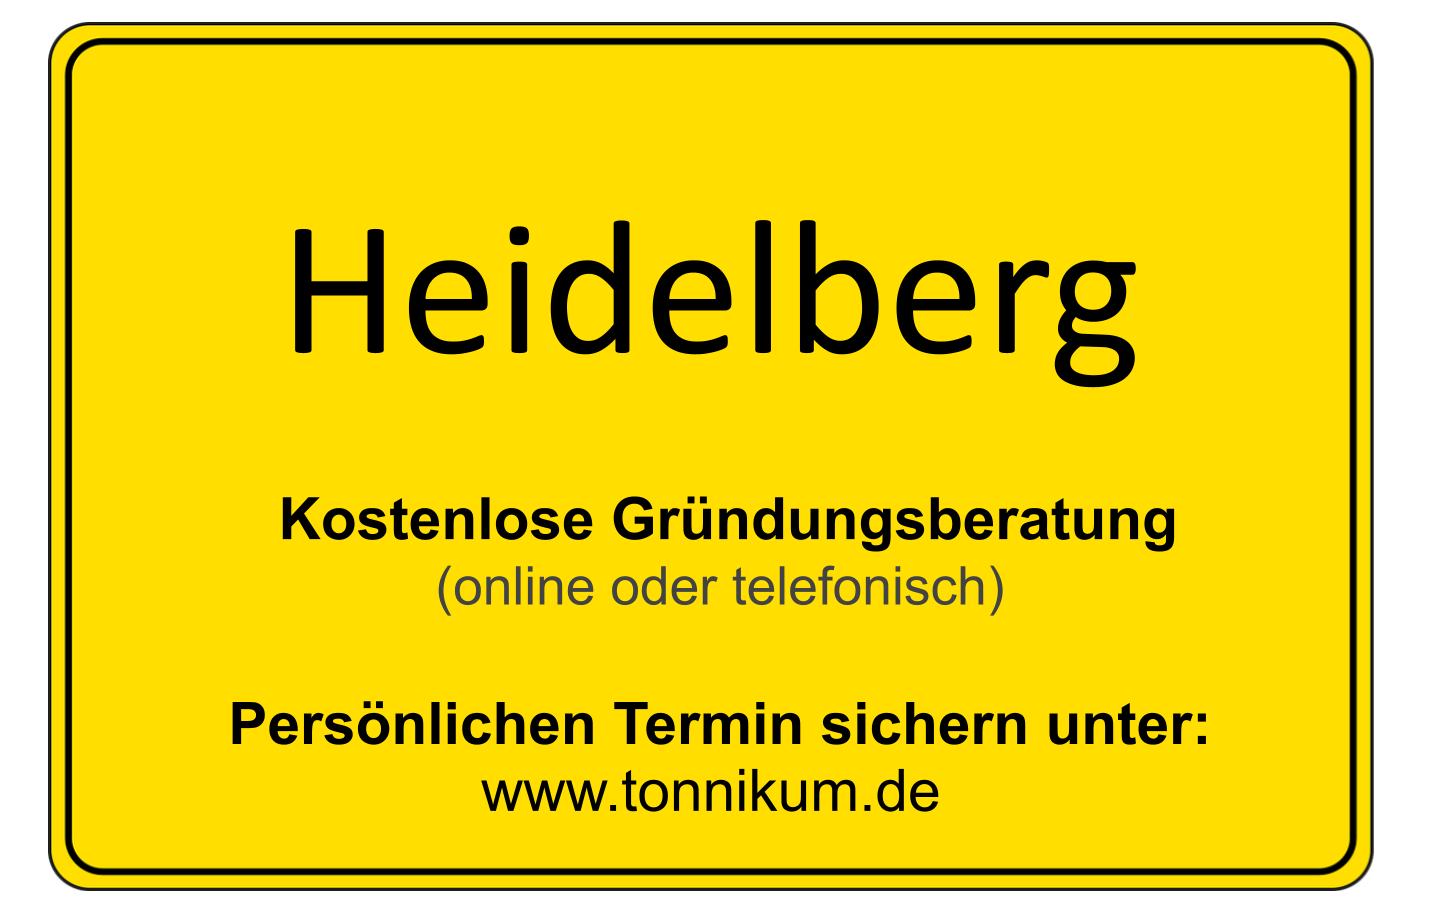 Existenzgründungsberatung Heidelberg ⇒ kostenloses Erstgespräch